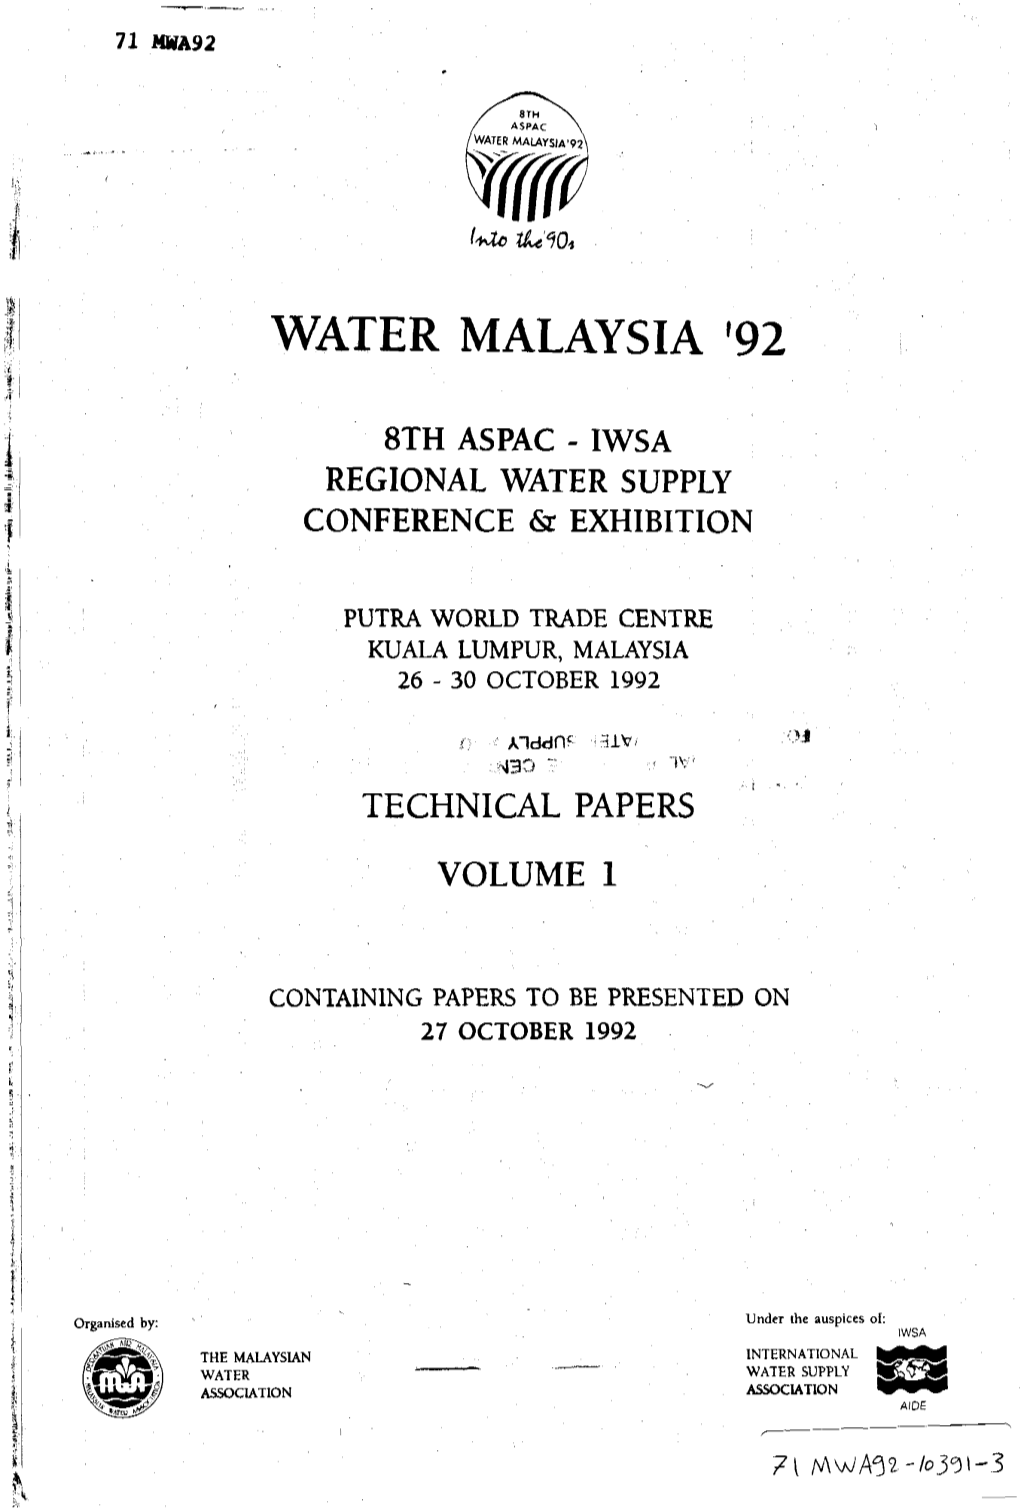 Water Malaysia '92